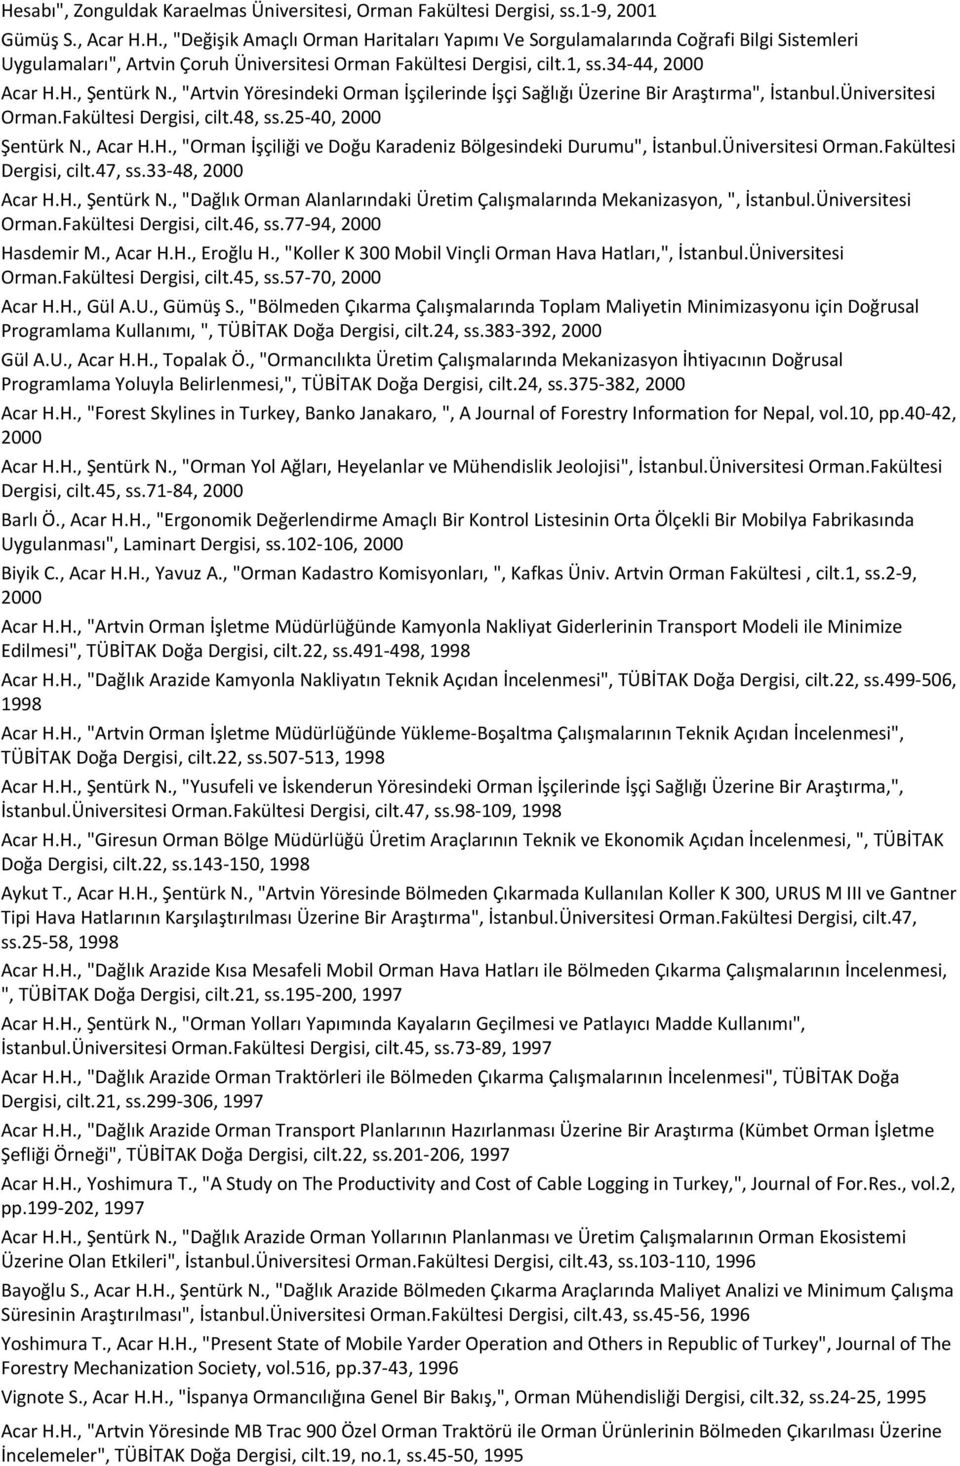 34-44, 2000 Acar H.H., Şentürk N., "Artvin Yöresindeki Orman İşçilerinde İşçi Sağlığı Üzerine Bir Araştırma", İstanbul.Üniversitesi Orman.Fakültesi Dergisi, cilt.48, ss.25-40, 2000 Şentürk N., Acar H.